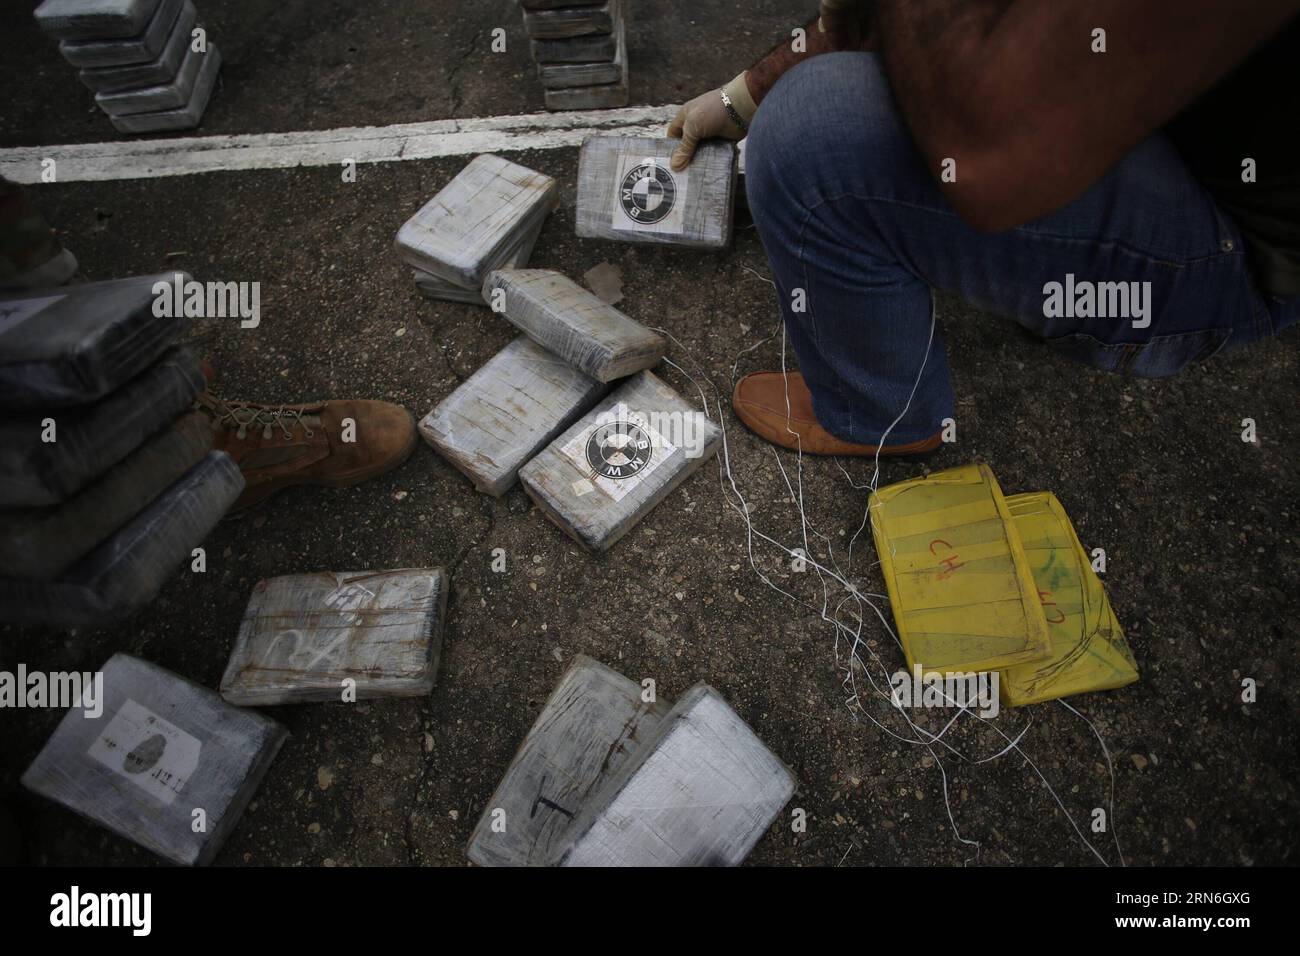 Elementi del National Air and Naval Service (SENAN) piazzano pacchetti di droga durante una conferenza stampa, nella città di Panama, capitale di Panama, il 27 luglio 2015. Il SENAN sequestrò 1,9 tonnellate di droga e arrestò tre residenti colombiani e un honduregno durante le operazioni antidroga nelle province di Veraguas e Bocas del Toro il 25 e 26 luglio, secondo la stampa locale. (rtg) PANAMA-PANAMA-PANAMA-SICUREZZA-TRAFFICO DI DROGA MAURICIOxVALENZUELA PUBLICATIONxNOTxINxCHN elemento del National Air and Naval Service SENAN Place Drug Packages durante una conferenza stampa nella città di Panama Foto Stock